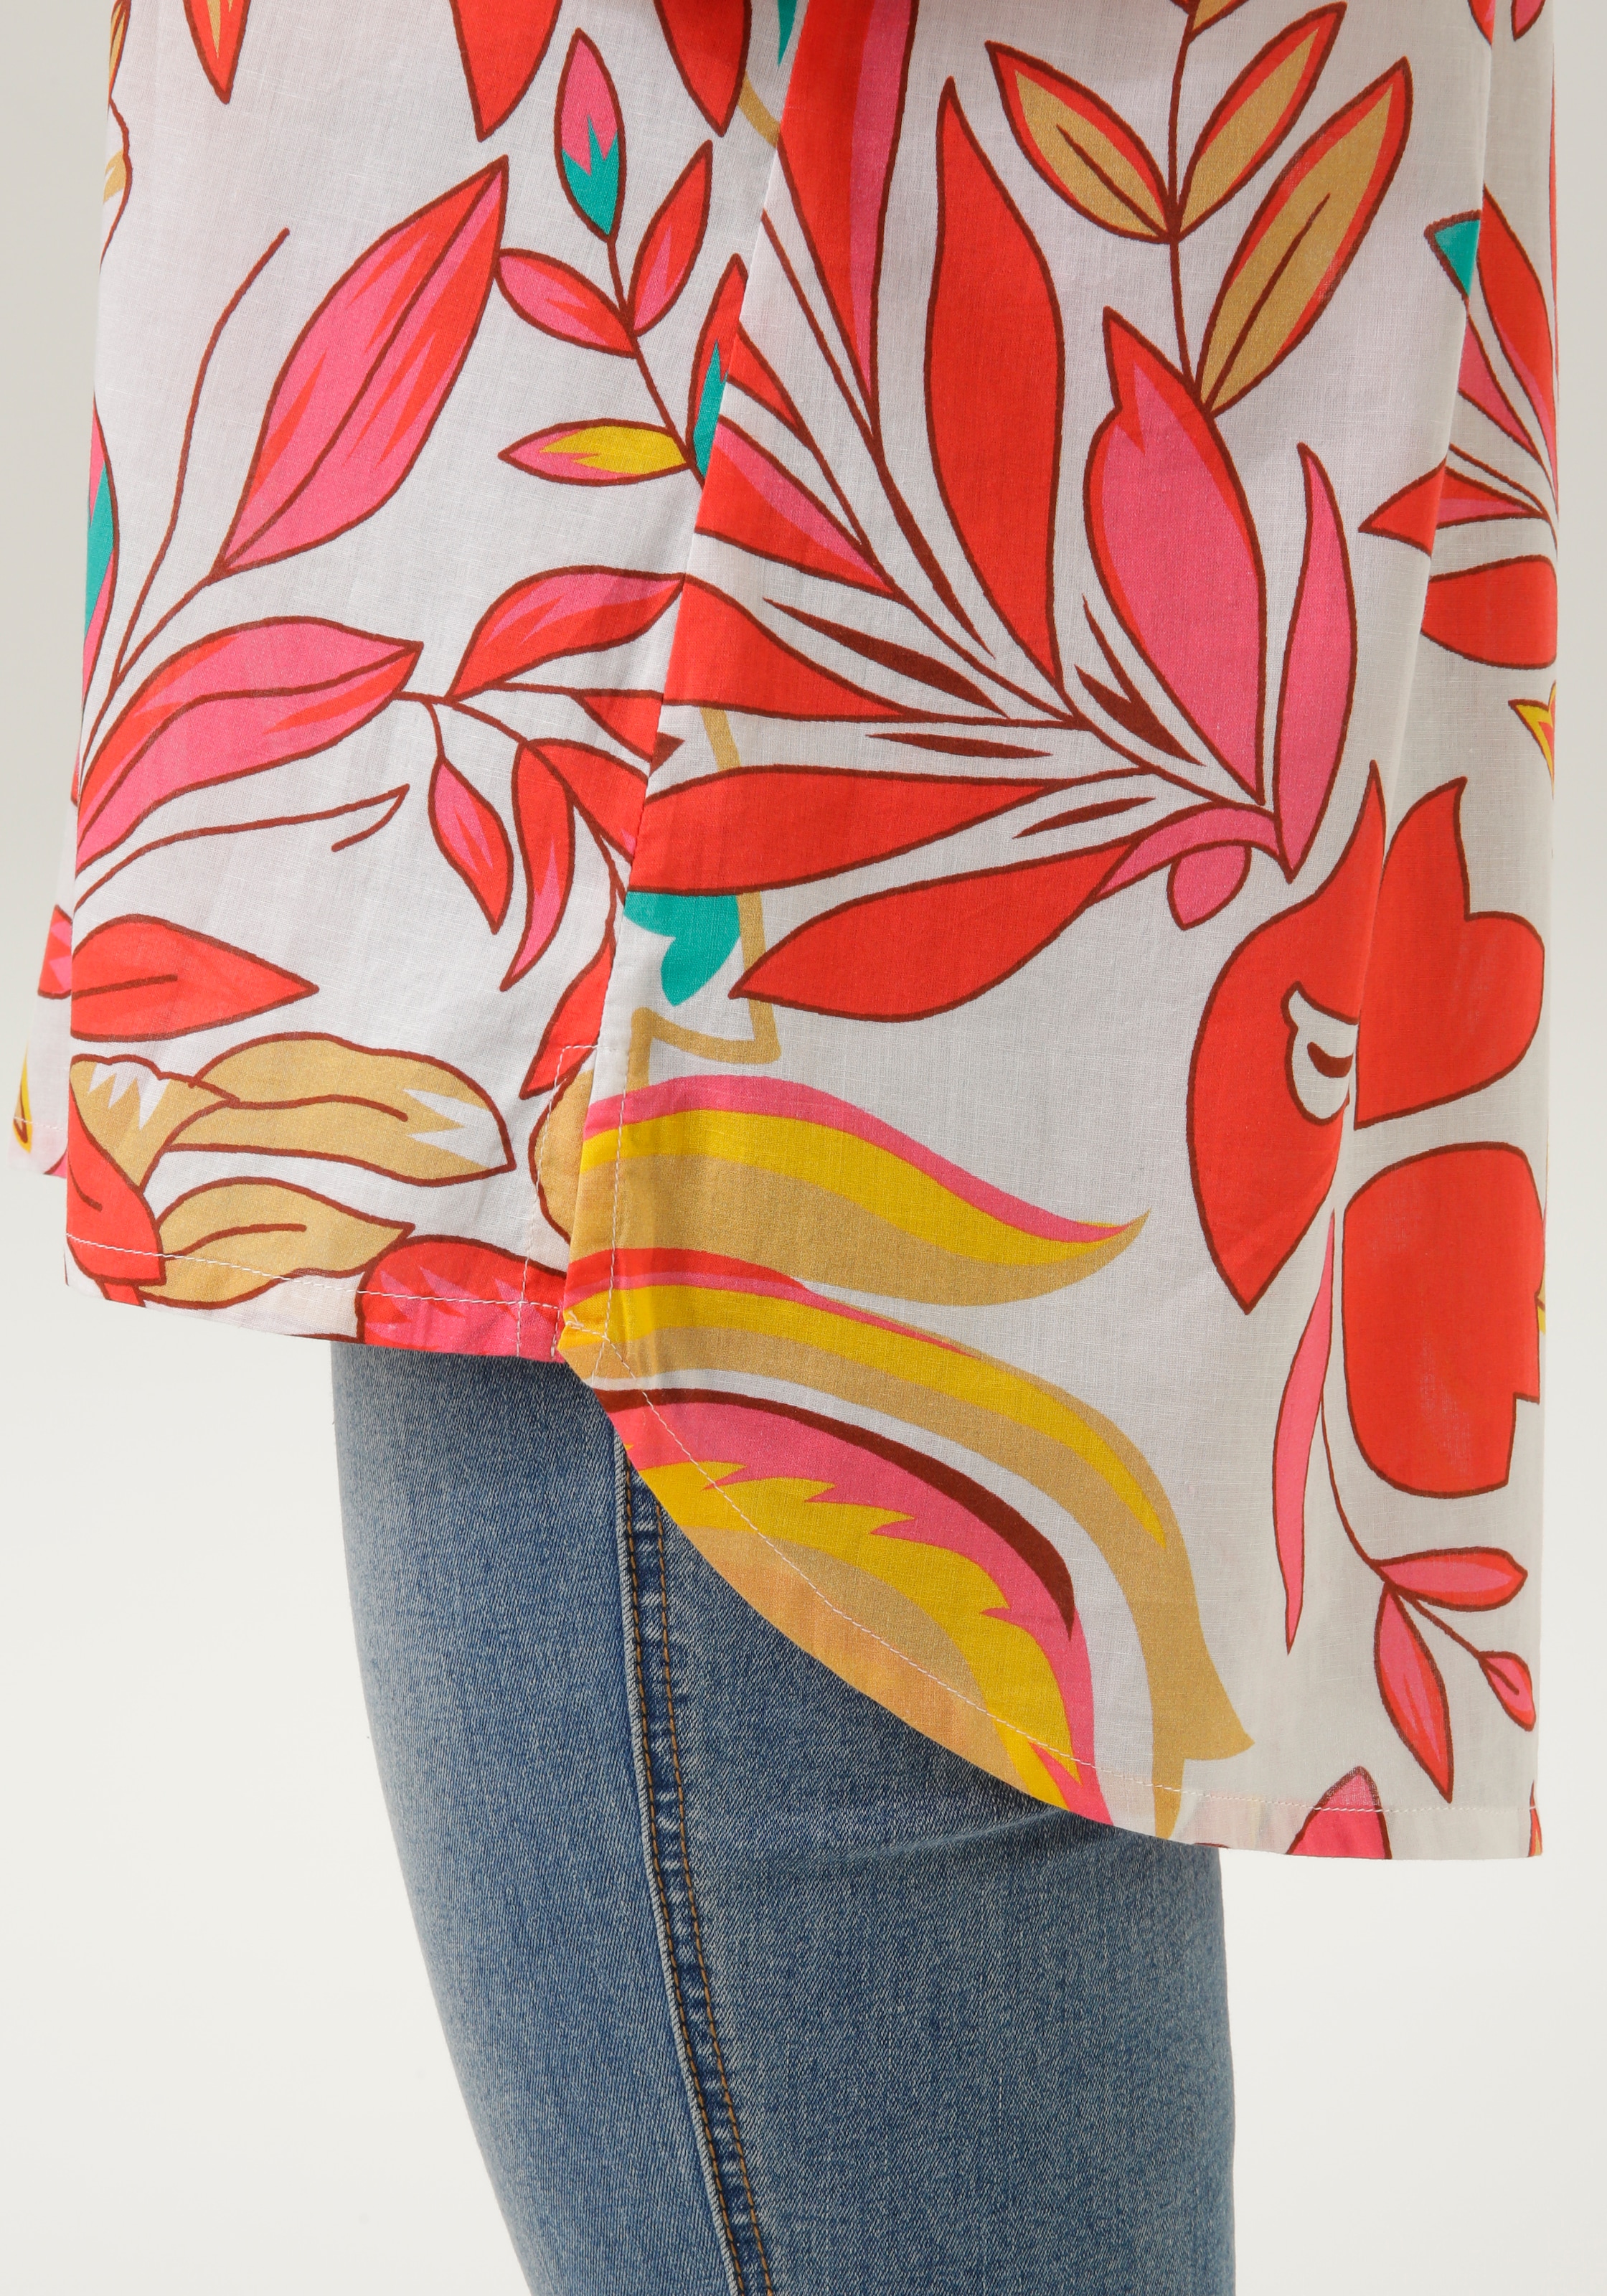 Aniston CASUAL Hemdbluse, im Tropical-Style mit Blättern und Blüten bedruckt